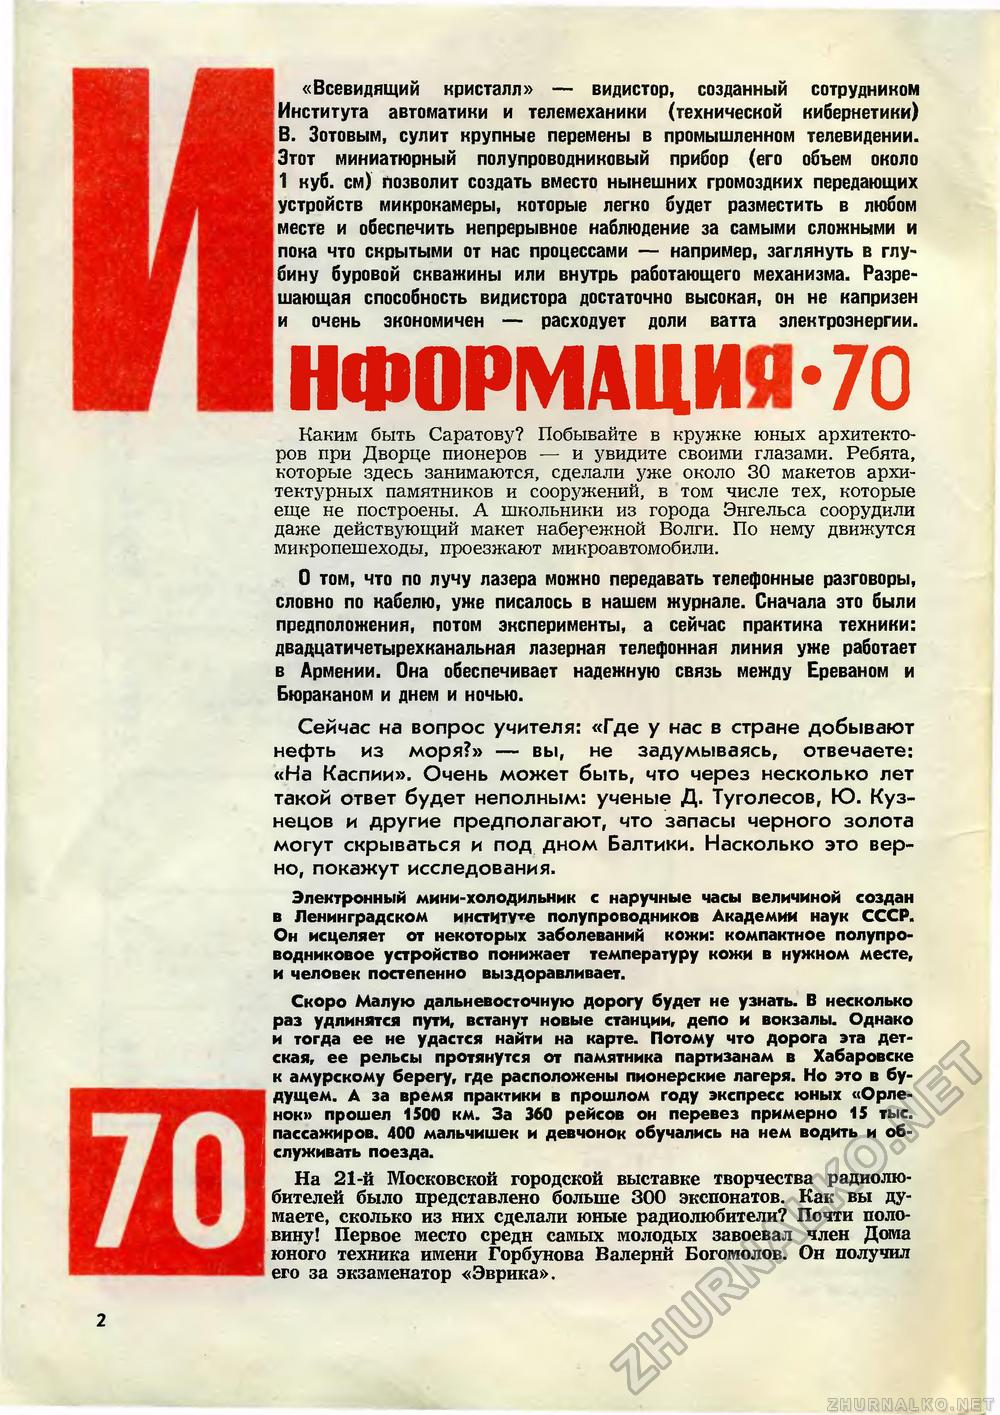   1970-01,  4